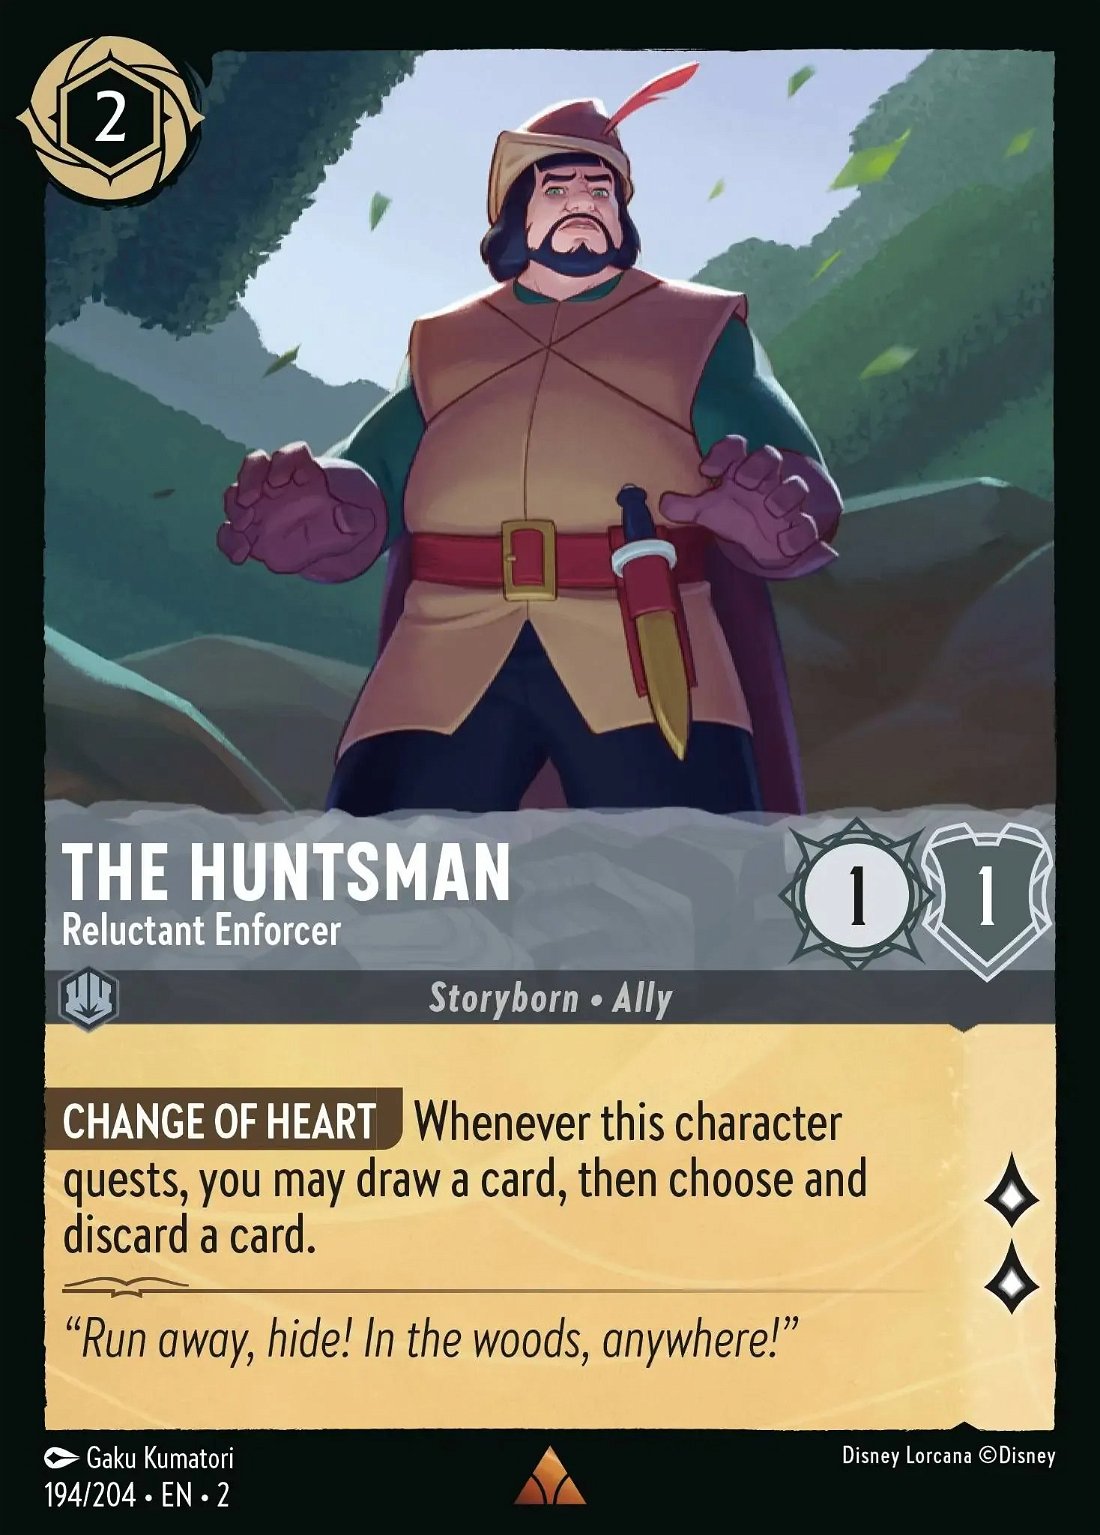 The Huntsman - Reluctant Enforcer Crop image Wallpaper